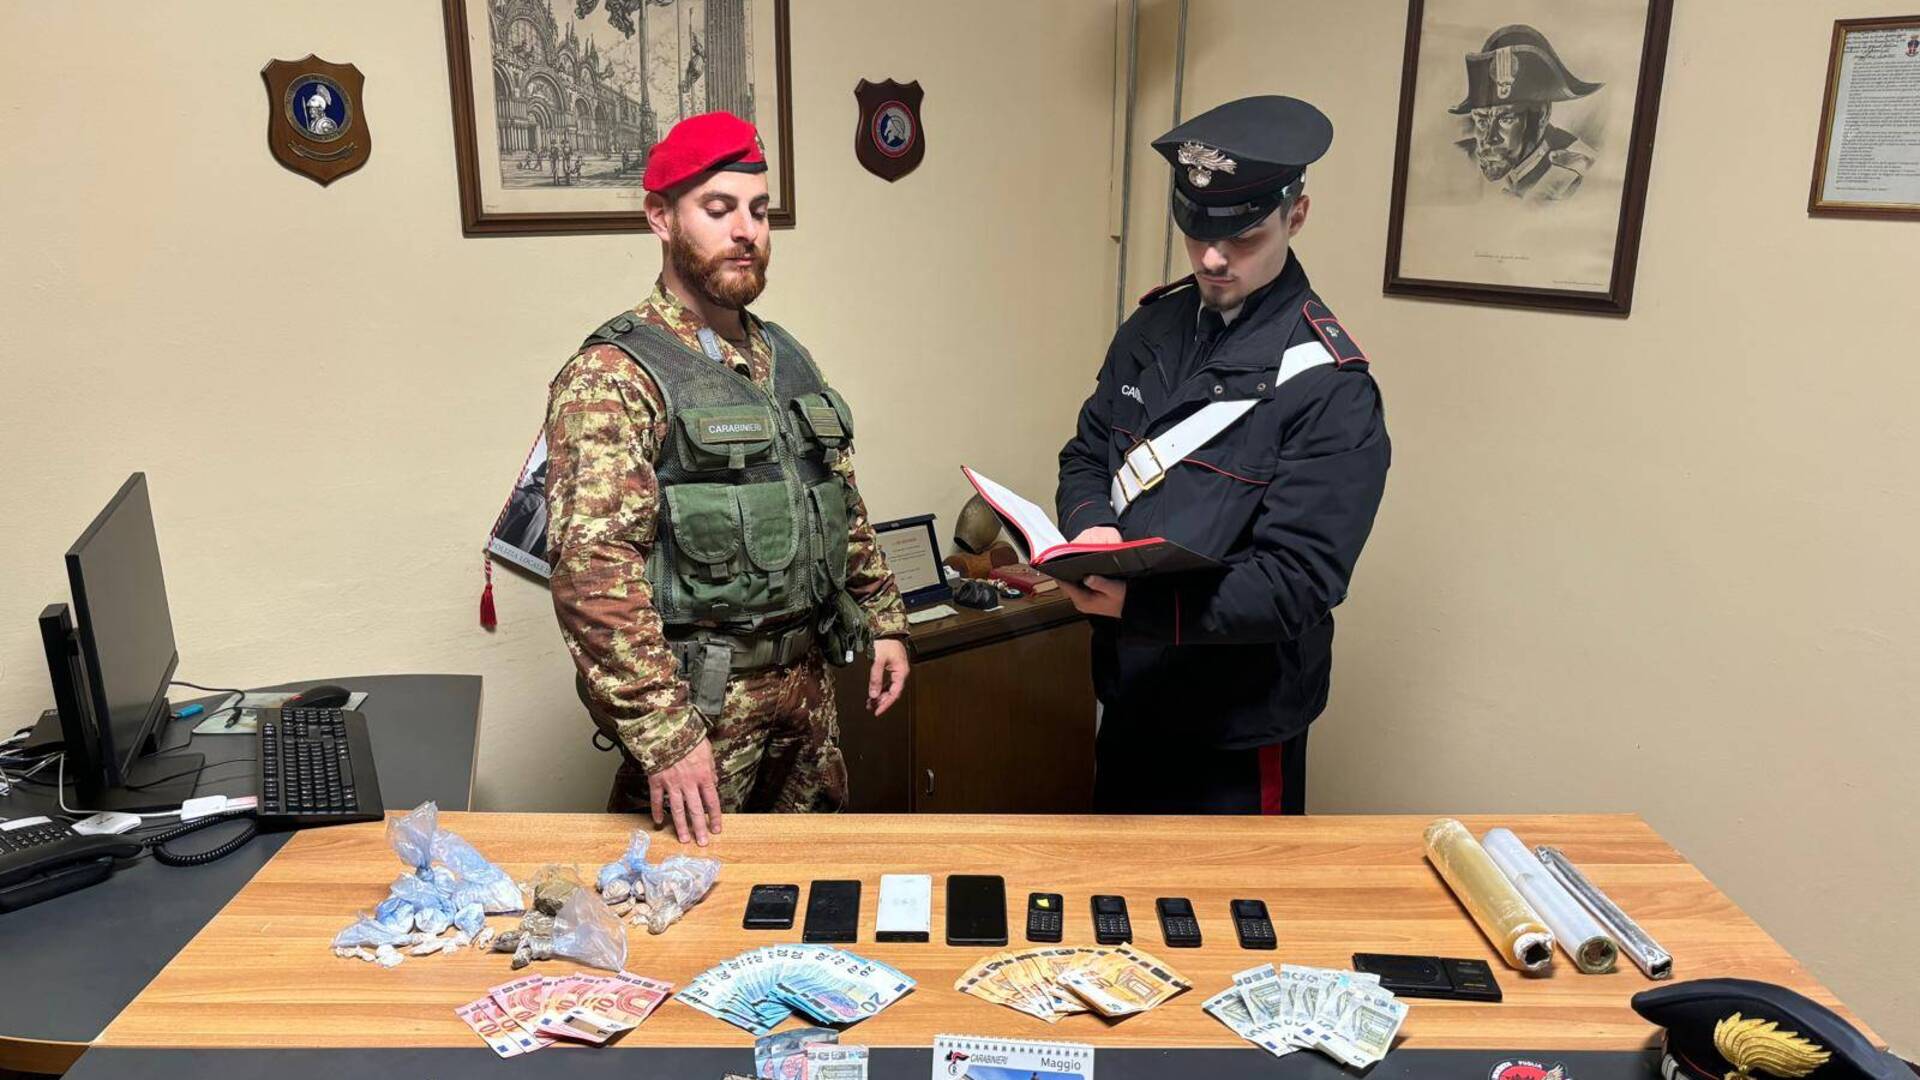 Eroina, cocaina e oltre mille euro in contanti: arrestato spacciatore a Pianbosco